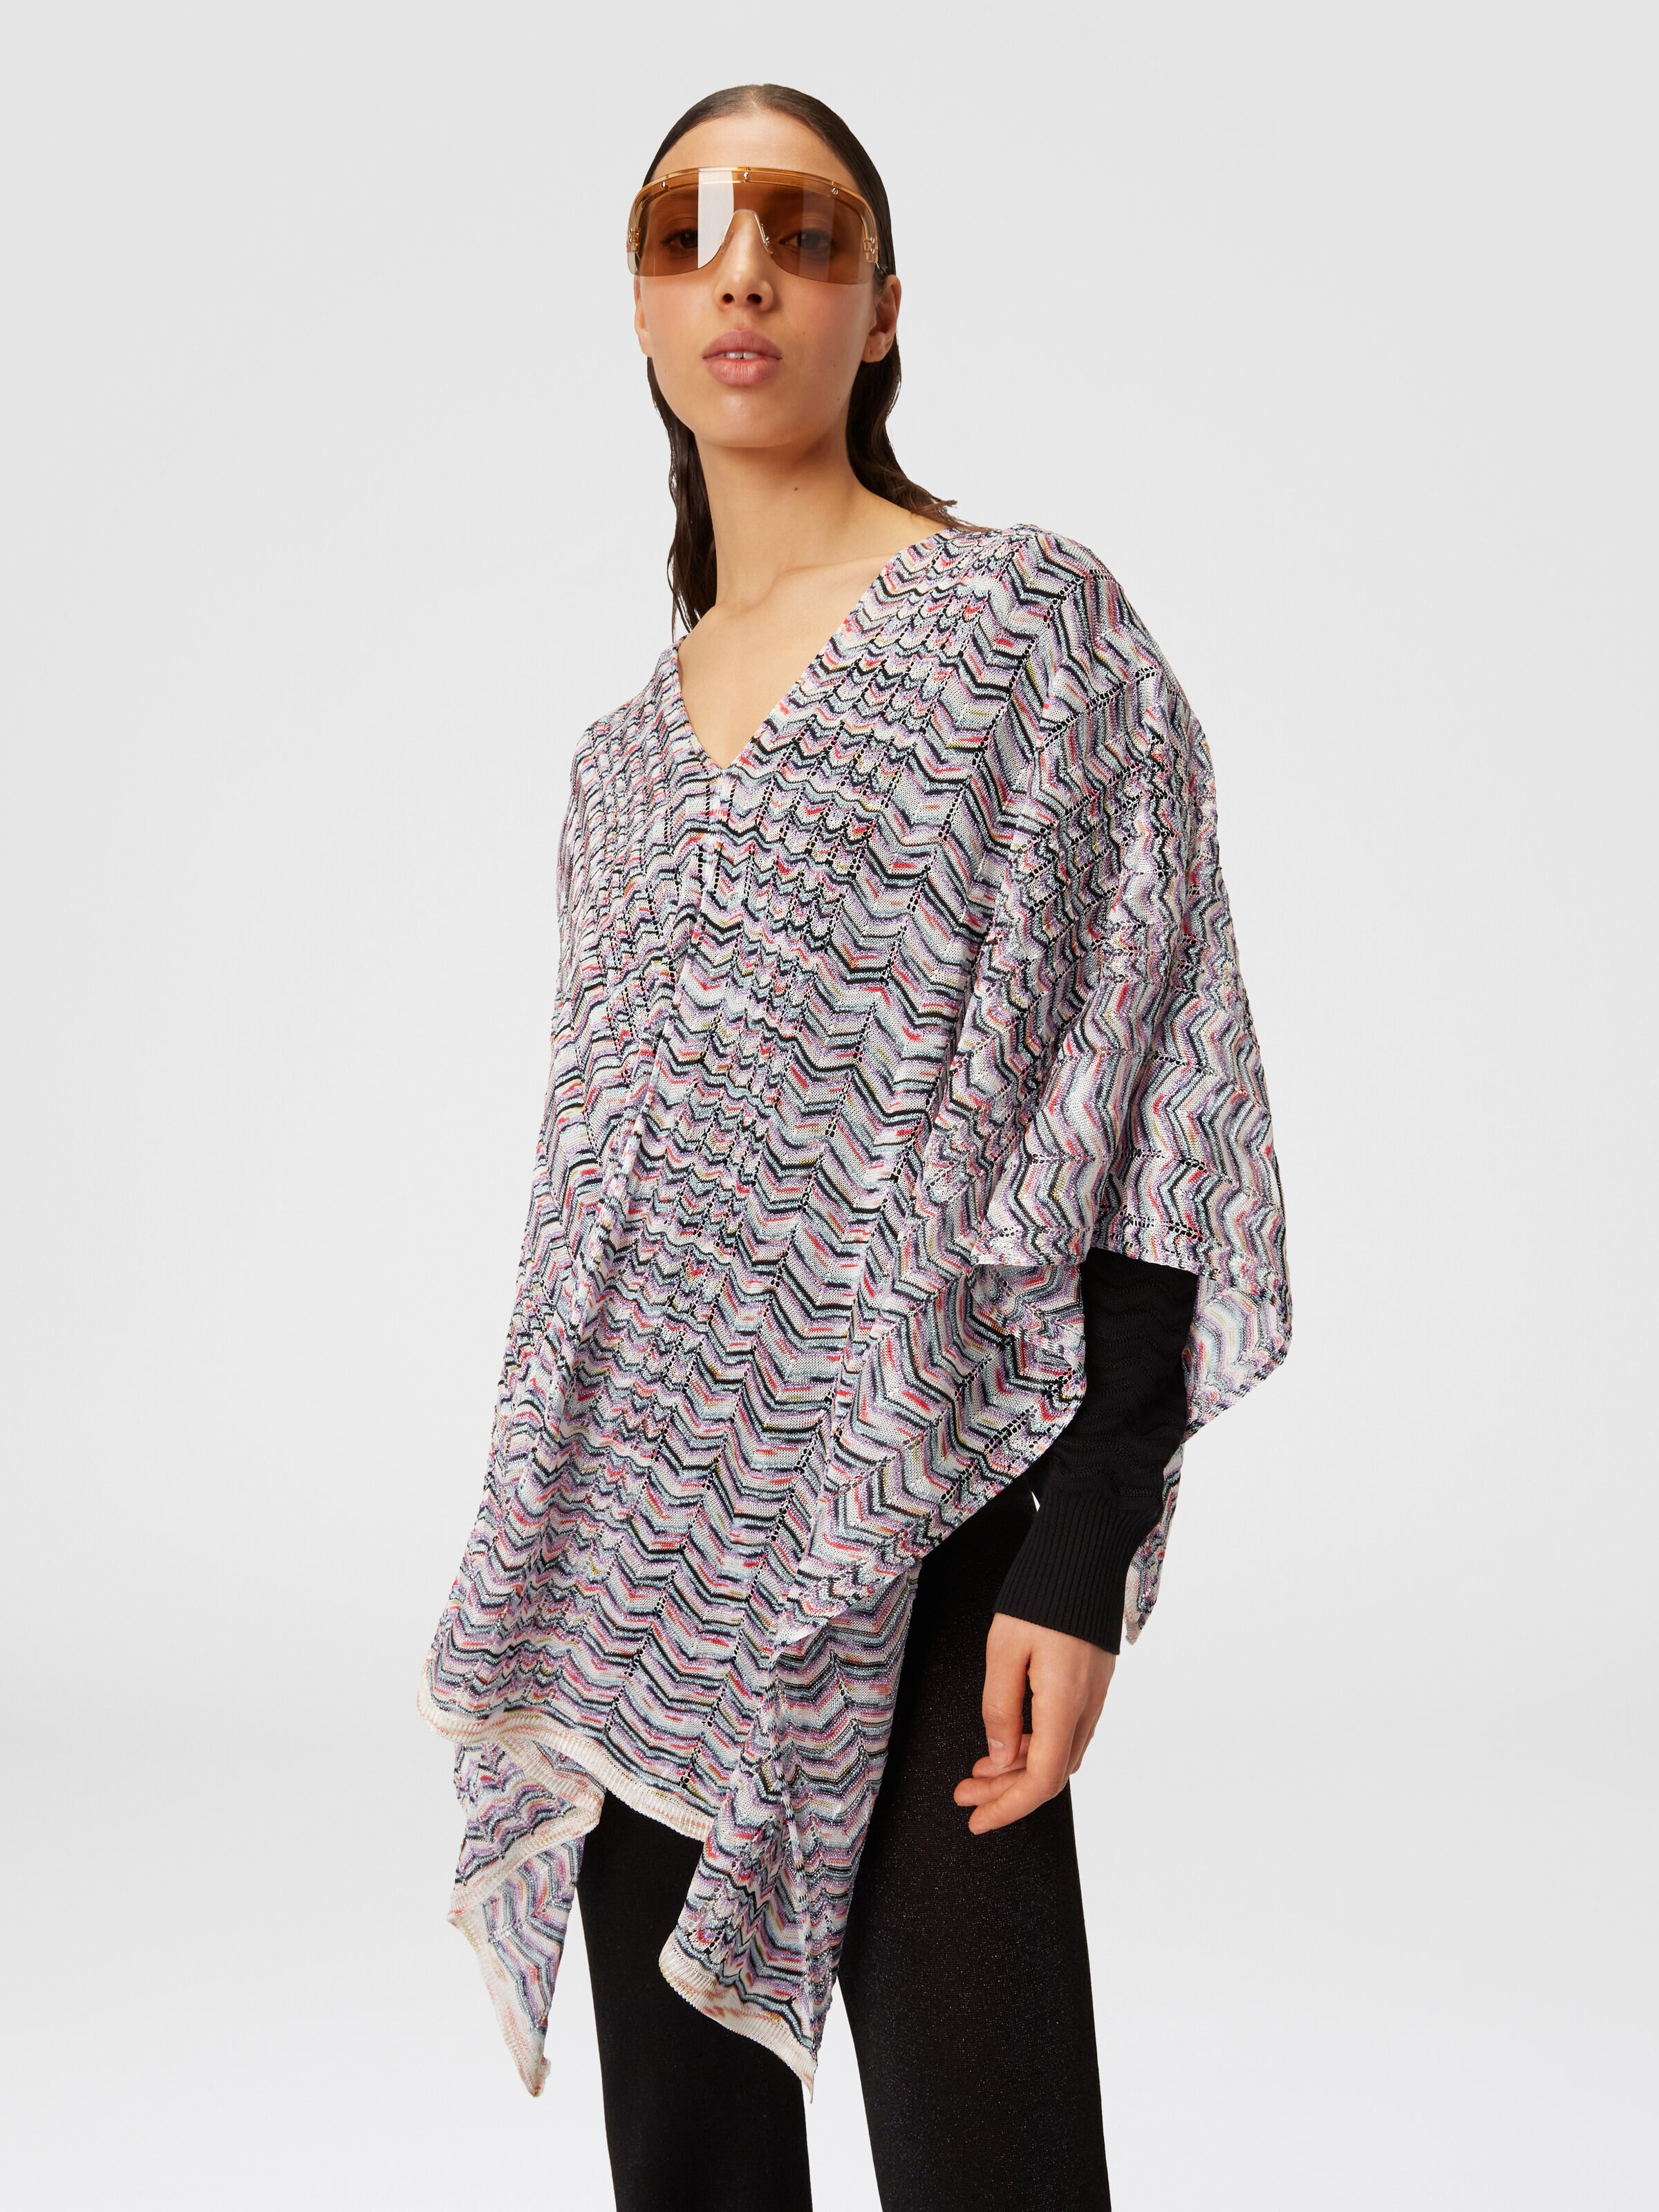 Poncho in viscose and cotton chevron knit, Multicoloured  - 3